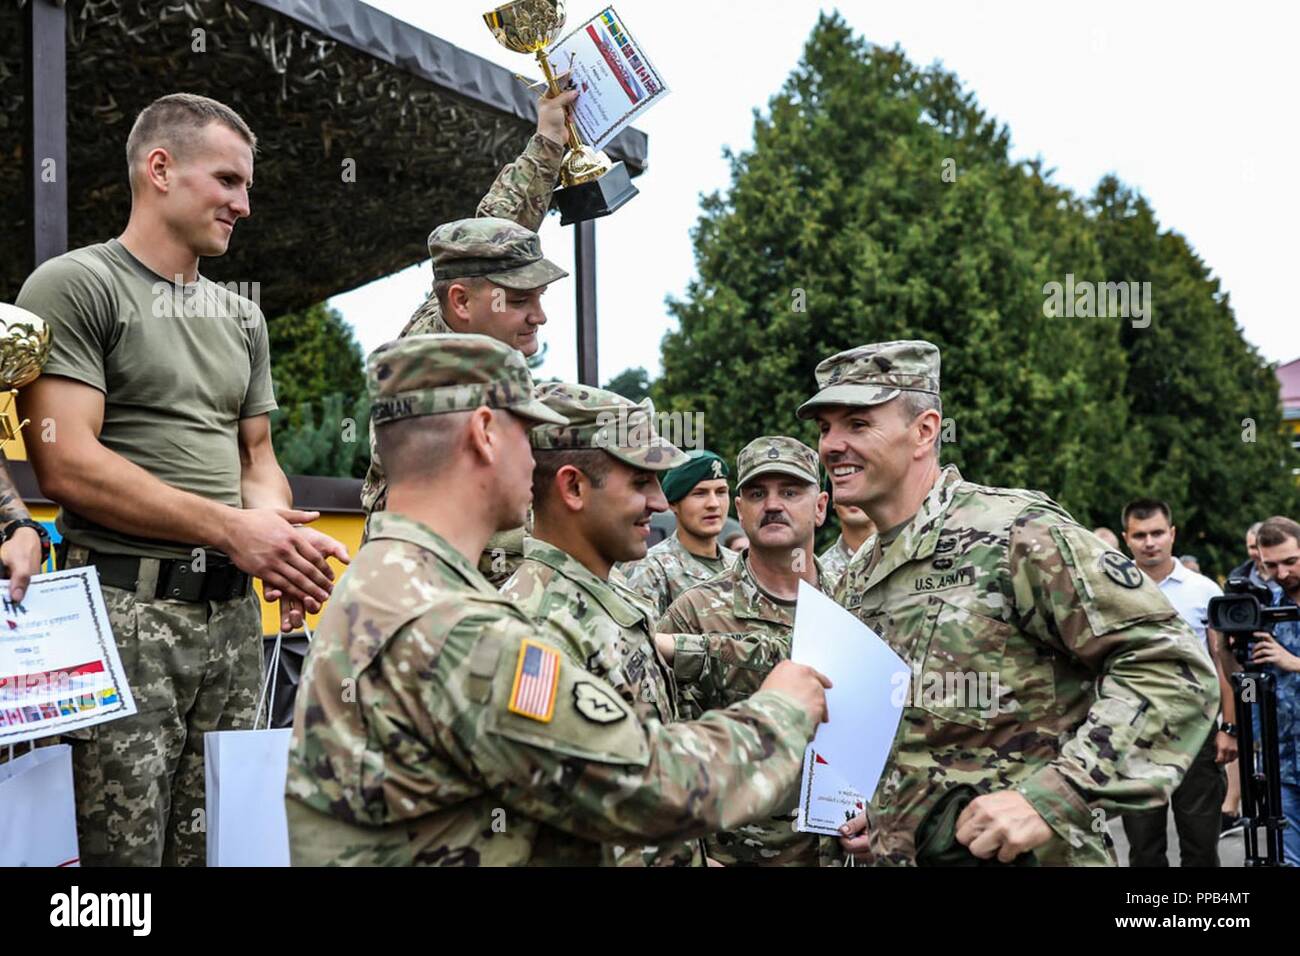 CSM Dale Crockett von der 278th Armored Cavalry Regiment gratuliert ein US-Team, das Haus den ersten Platz in einem Wettbewerb teilgenommen haben während der Polnischen Streitkräfte Tag an Yavoriv, Ukraine, 12.08.15. Stockfoto